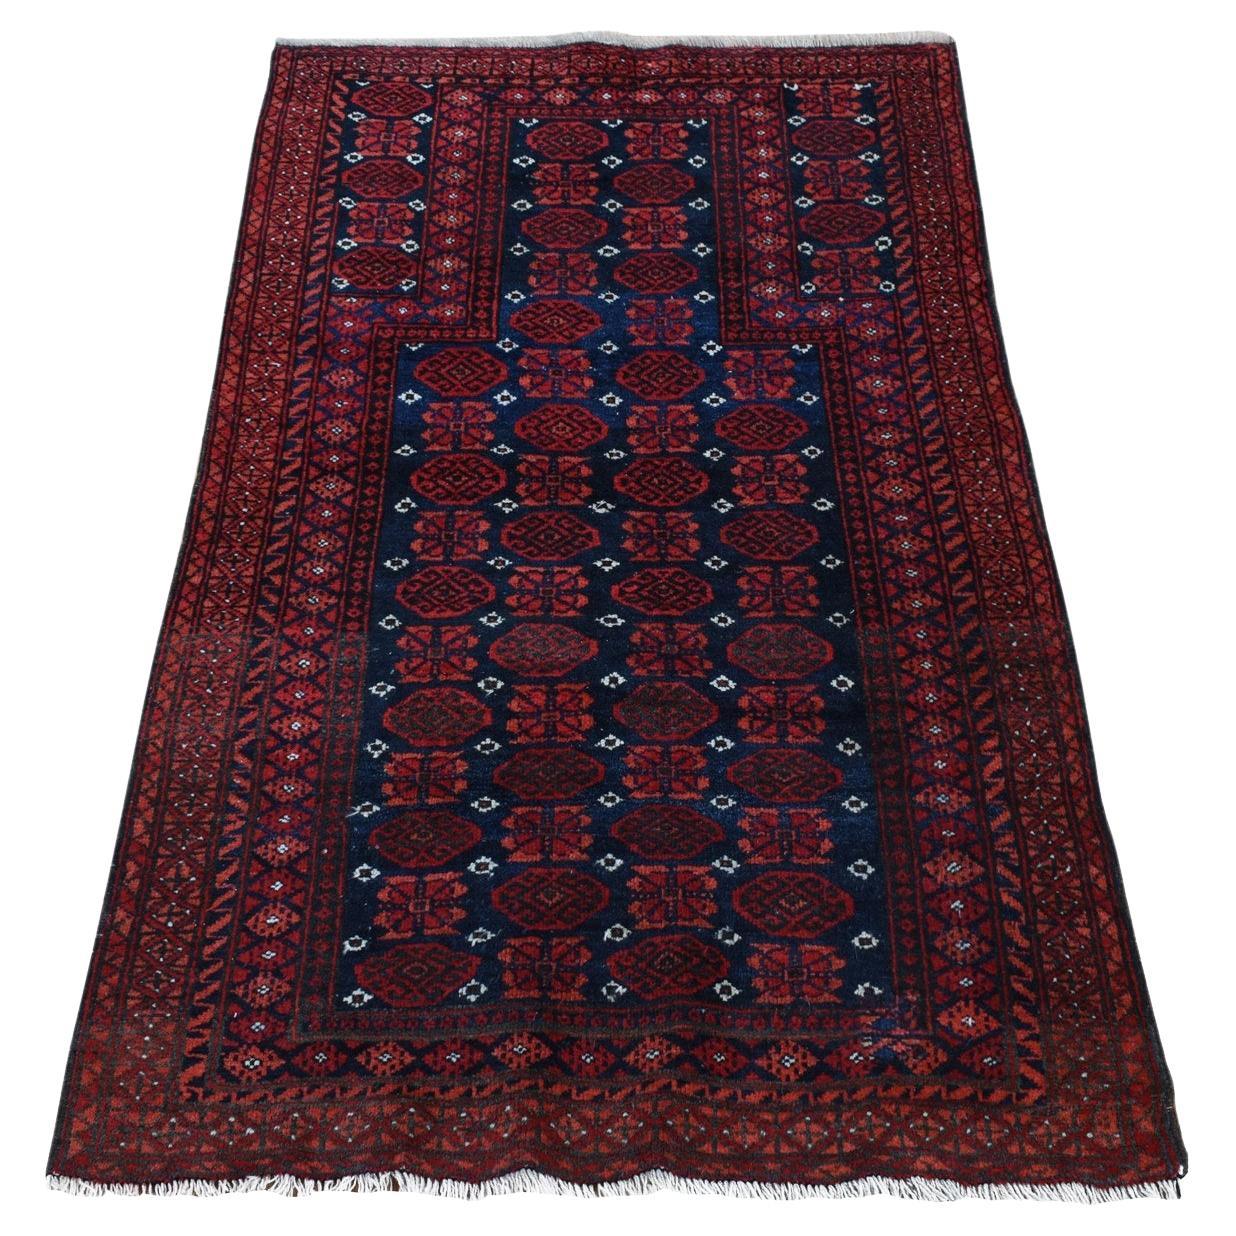 Chili Roter antiker persischer Baluch Gebetsteppich aus reiner Wolle, handgeknüpft, sauberer Teppich